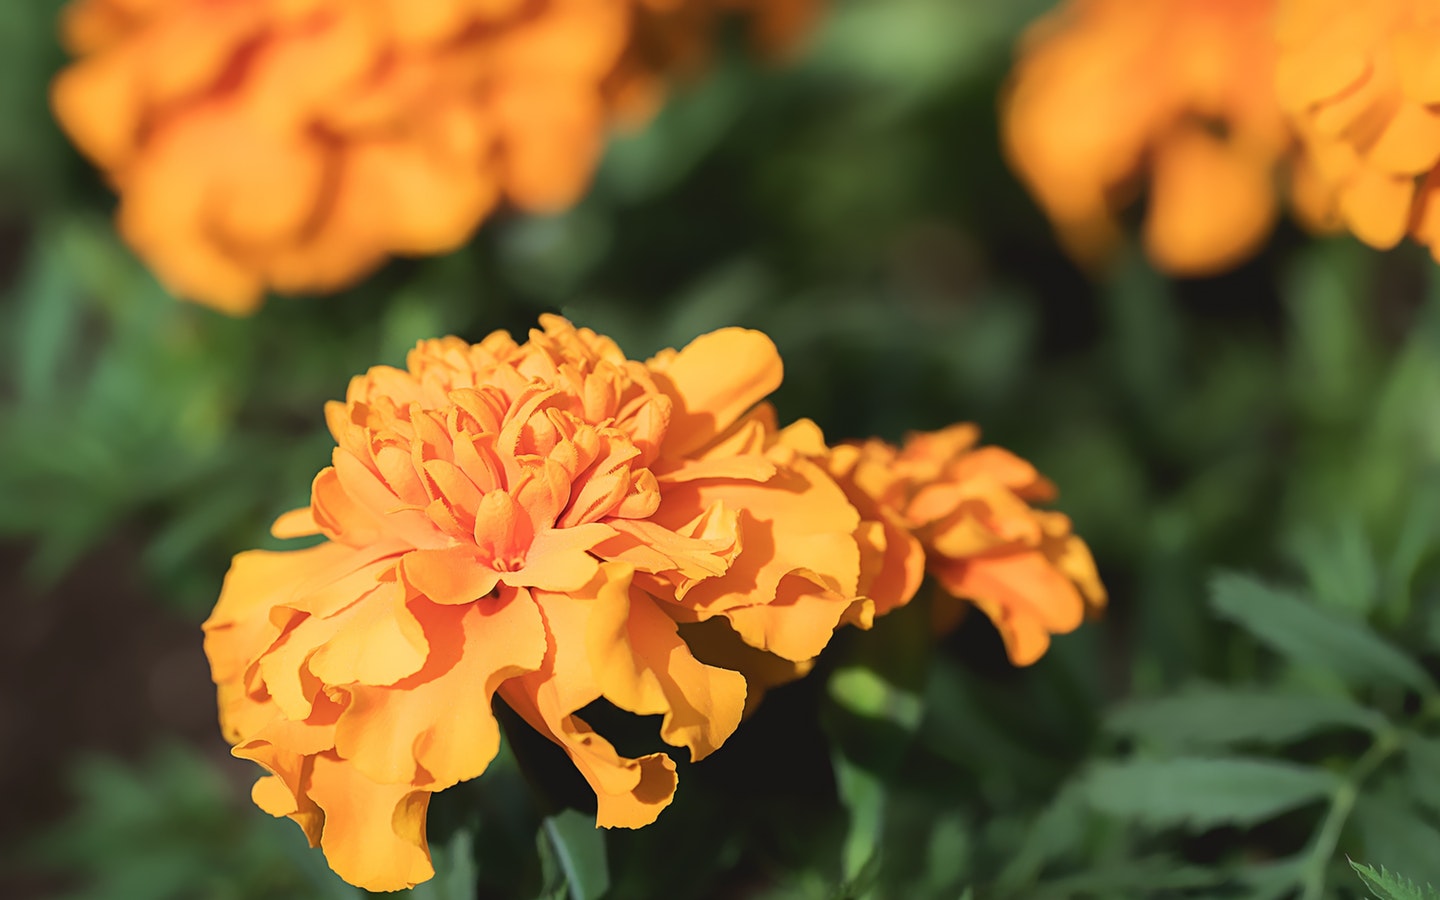 Marigold flower in a garden